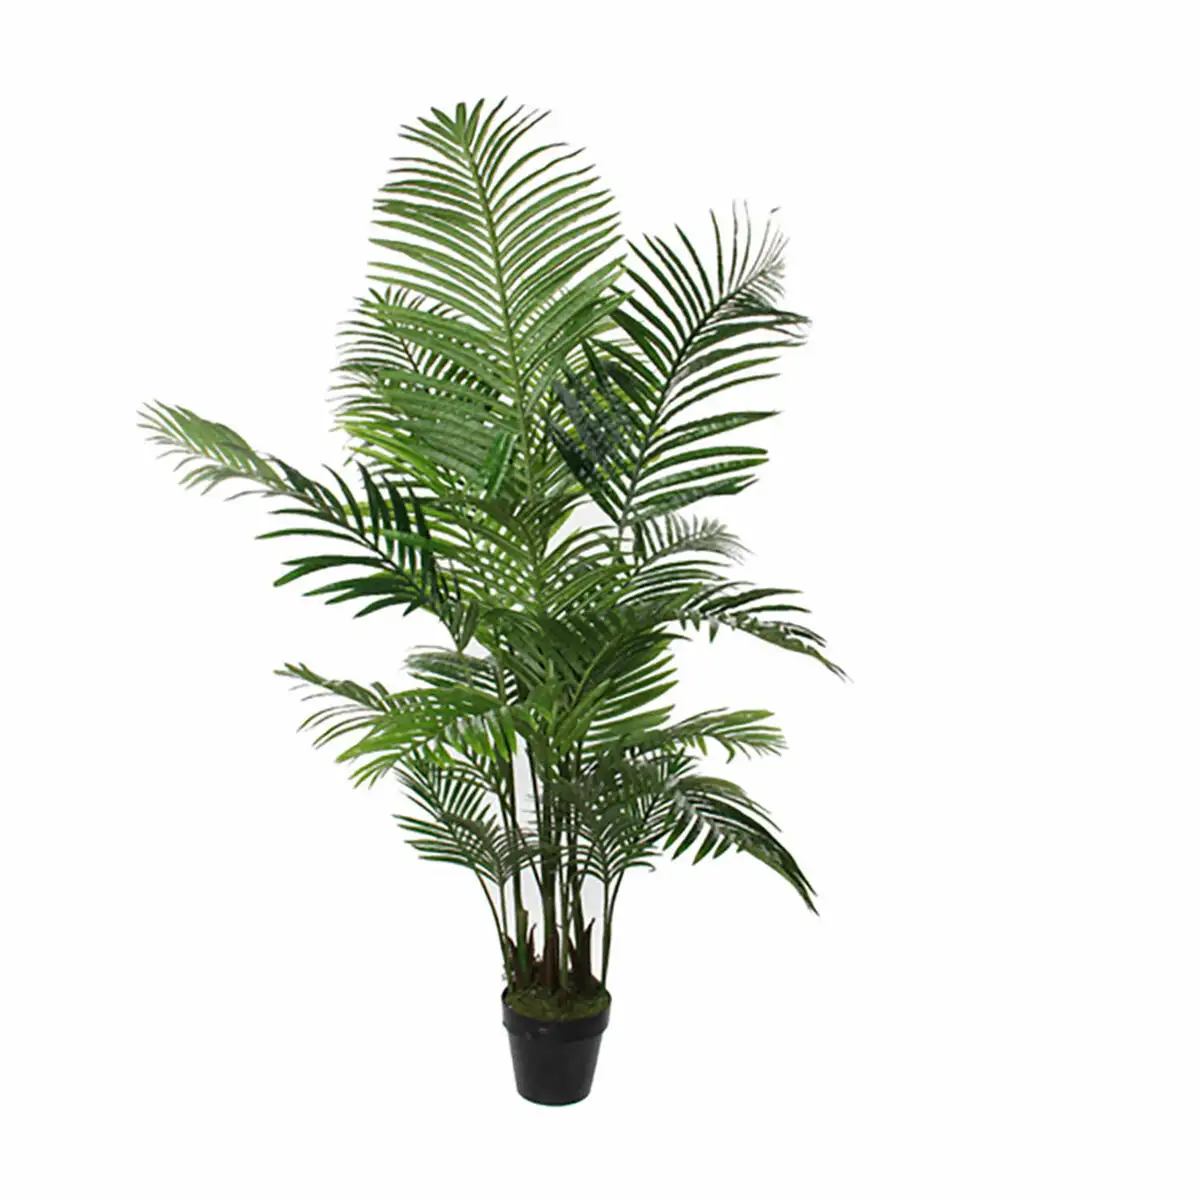 Plante de corative mica de corations palmier vert 80 x 160 cm_6153. DIAYTAR SENEGAL - Votre Oasis de Shopping en Ligne. Explorez notre boutique et découvrez des produits qui ajoutent une touche de magie à votre quotidien.